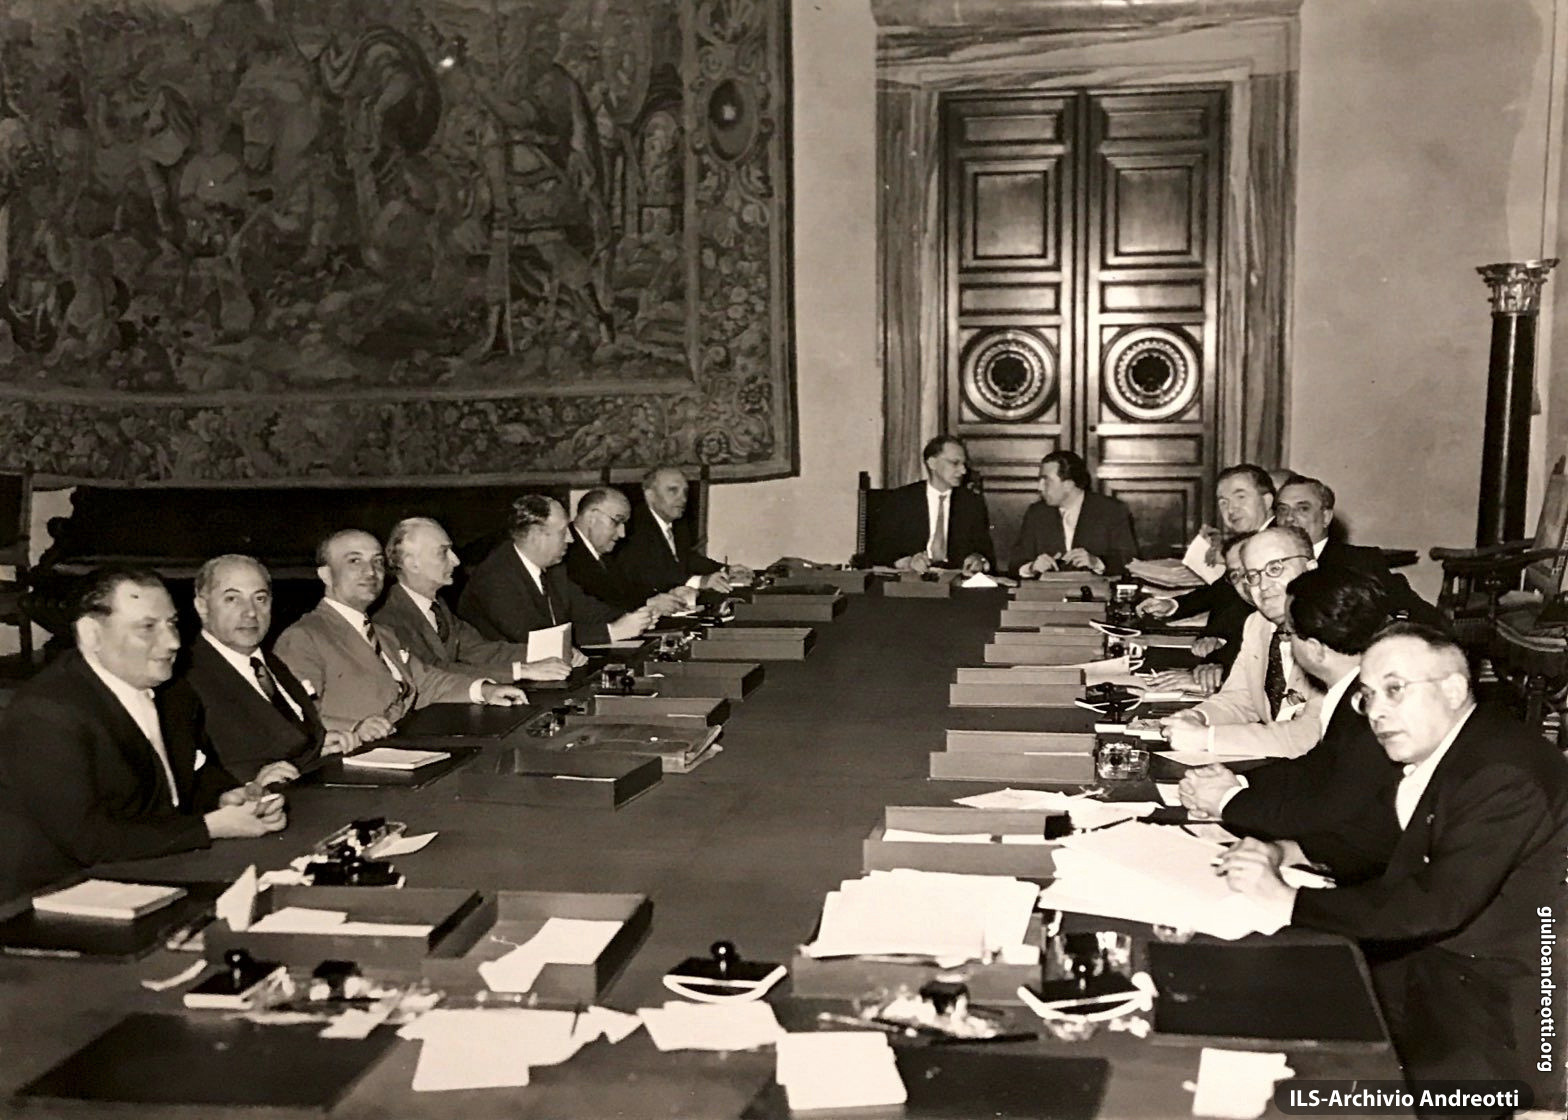 Luglio 1952. Riunione del governo De Gasperi VII a Villa Madama. Andreotti siede al suo posto di segretario del Consiglio dei Ministri accanto al Presidente.